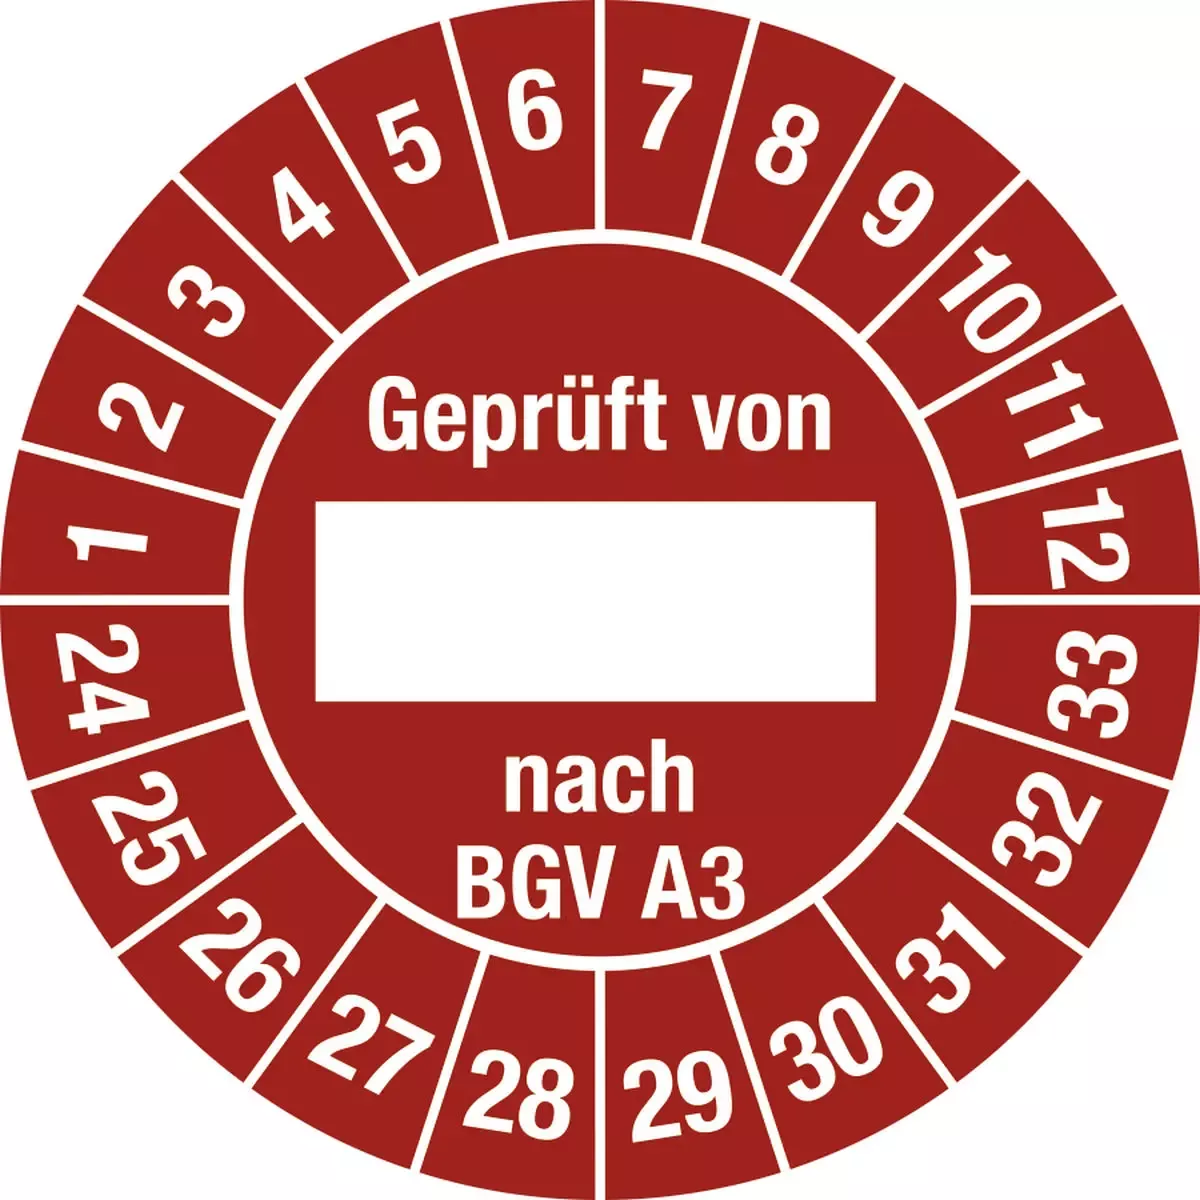 Hinweisschilder Prüfplakette Geprüft von nach BGV A3 2024 - 2033, Folie, Ø 25 mm, 10 Stück Bogen für Warnen und hinweisen